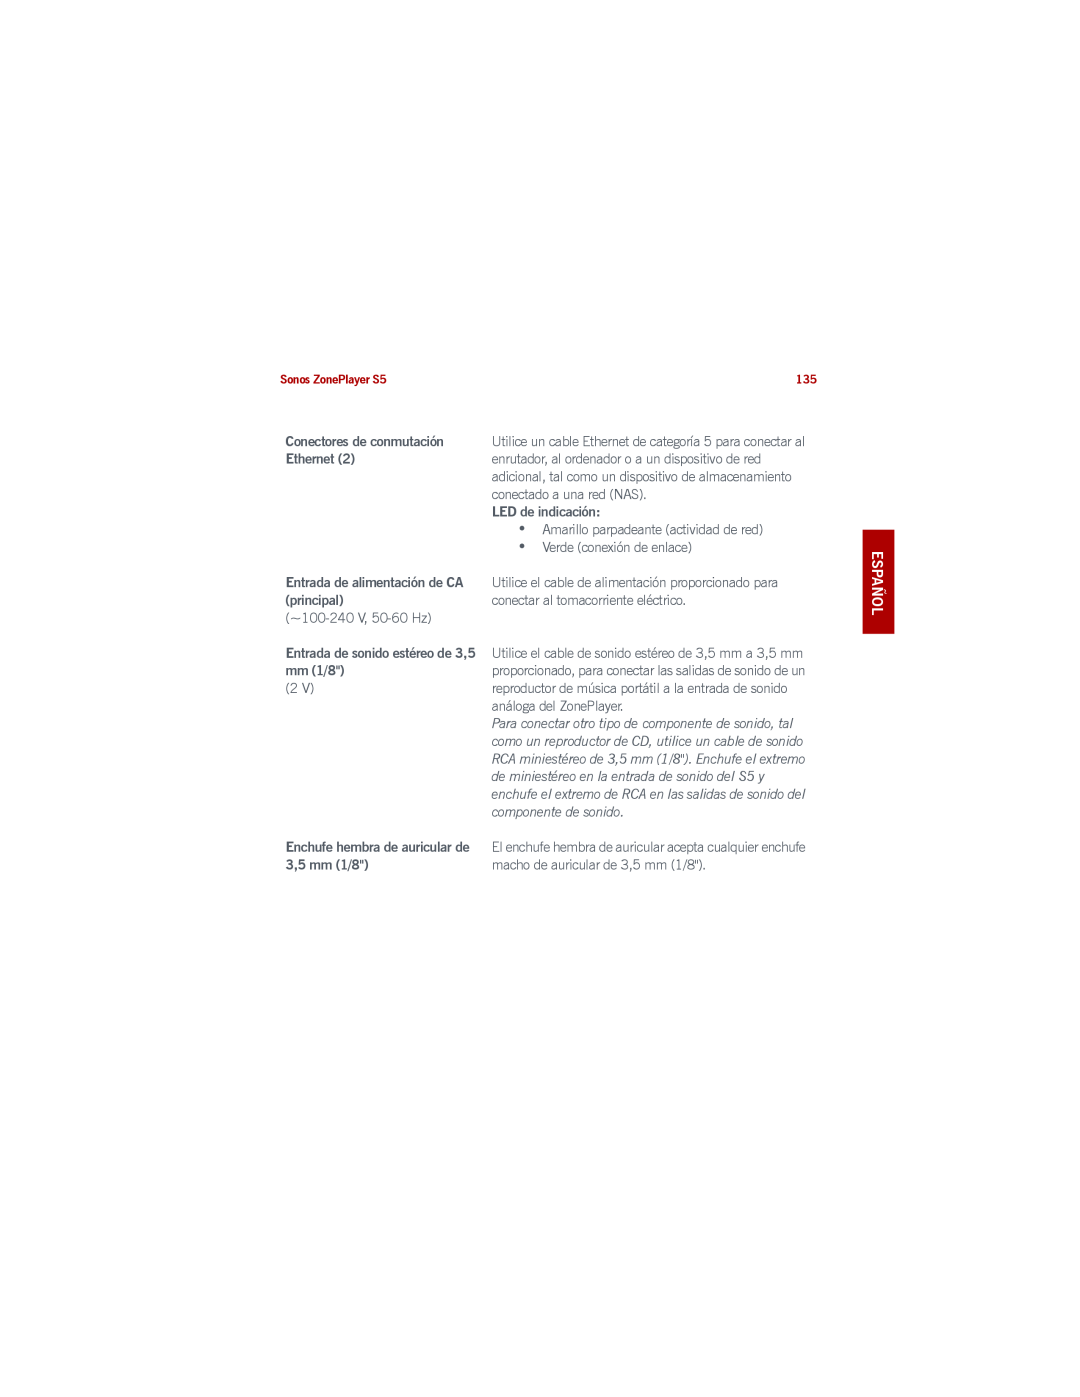 Sonos S5 manual Entrada de alimentación de CA principal, mm1/8, LED de indicación, Español Nederlands Svenska, 3,5 mm 1/8 